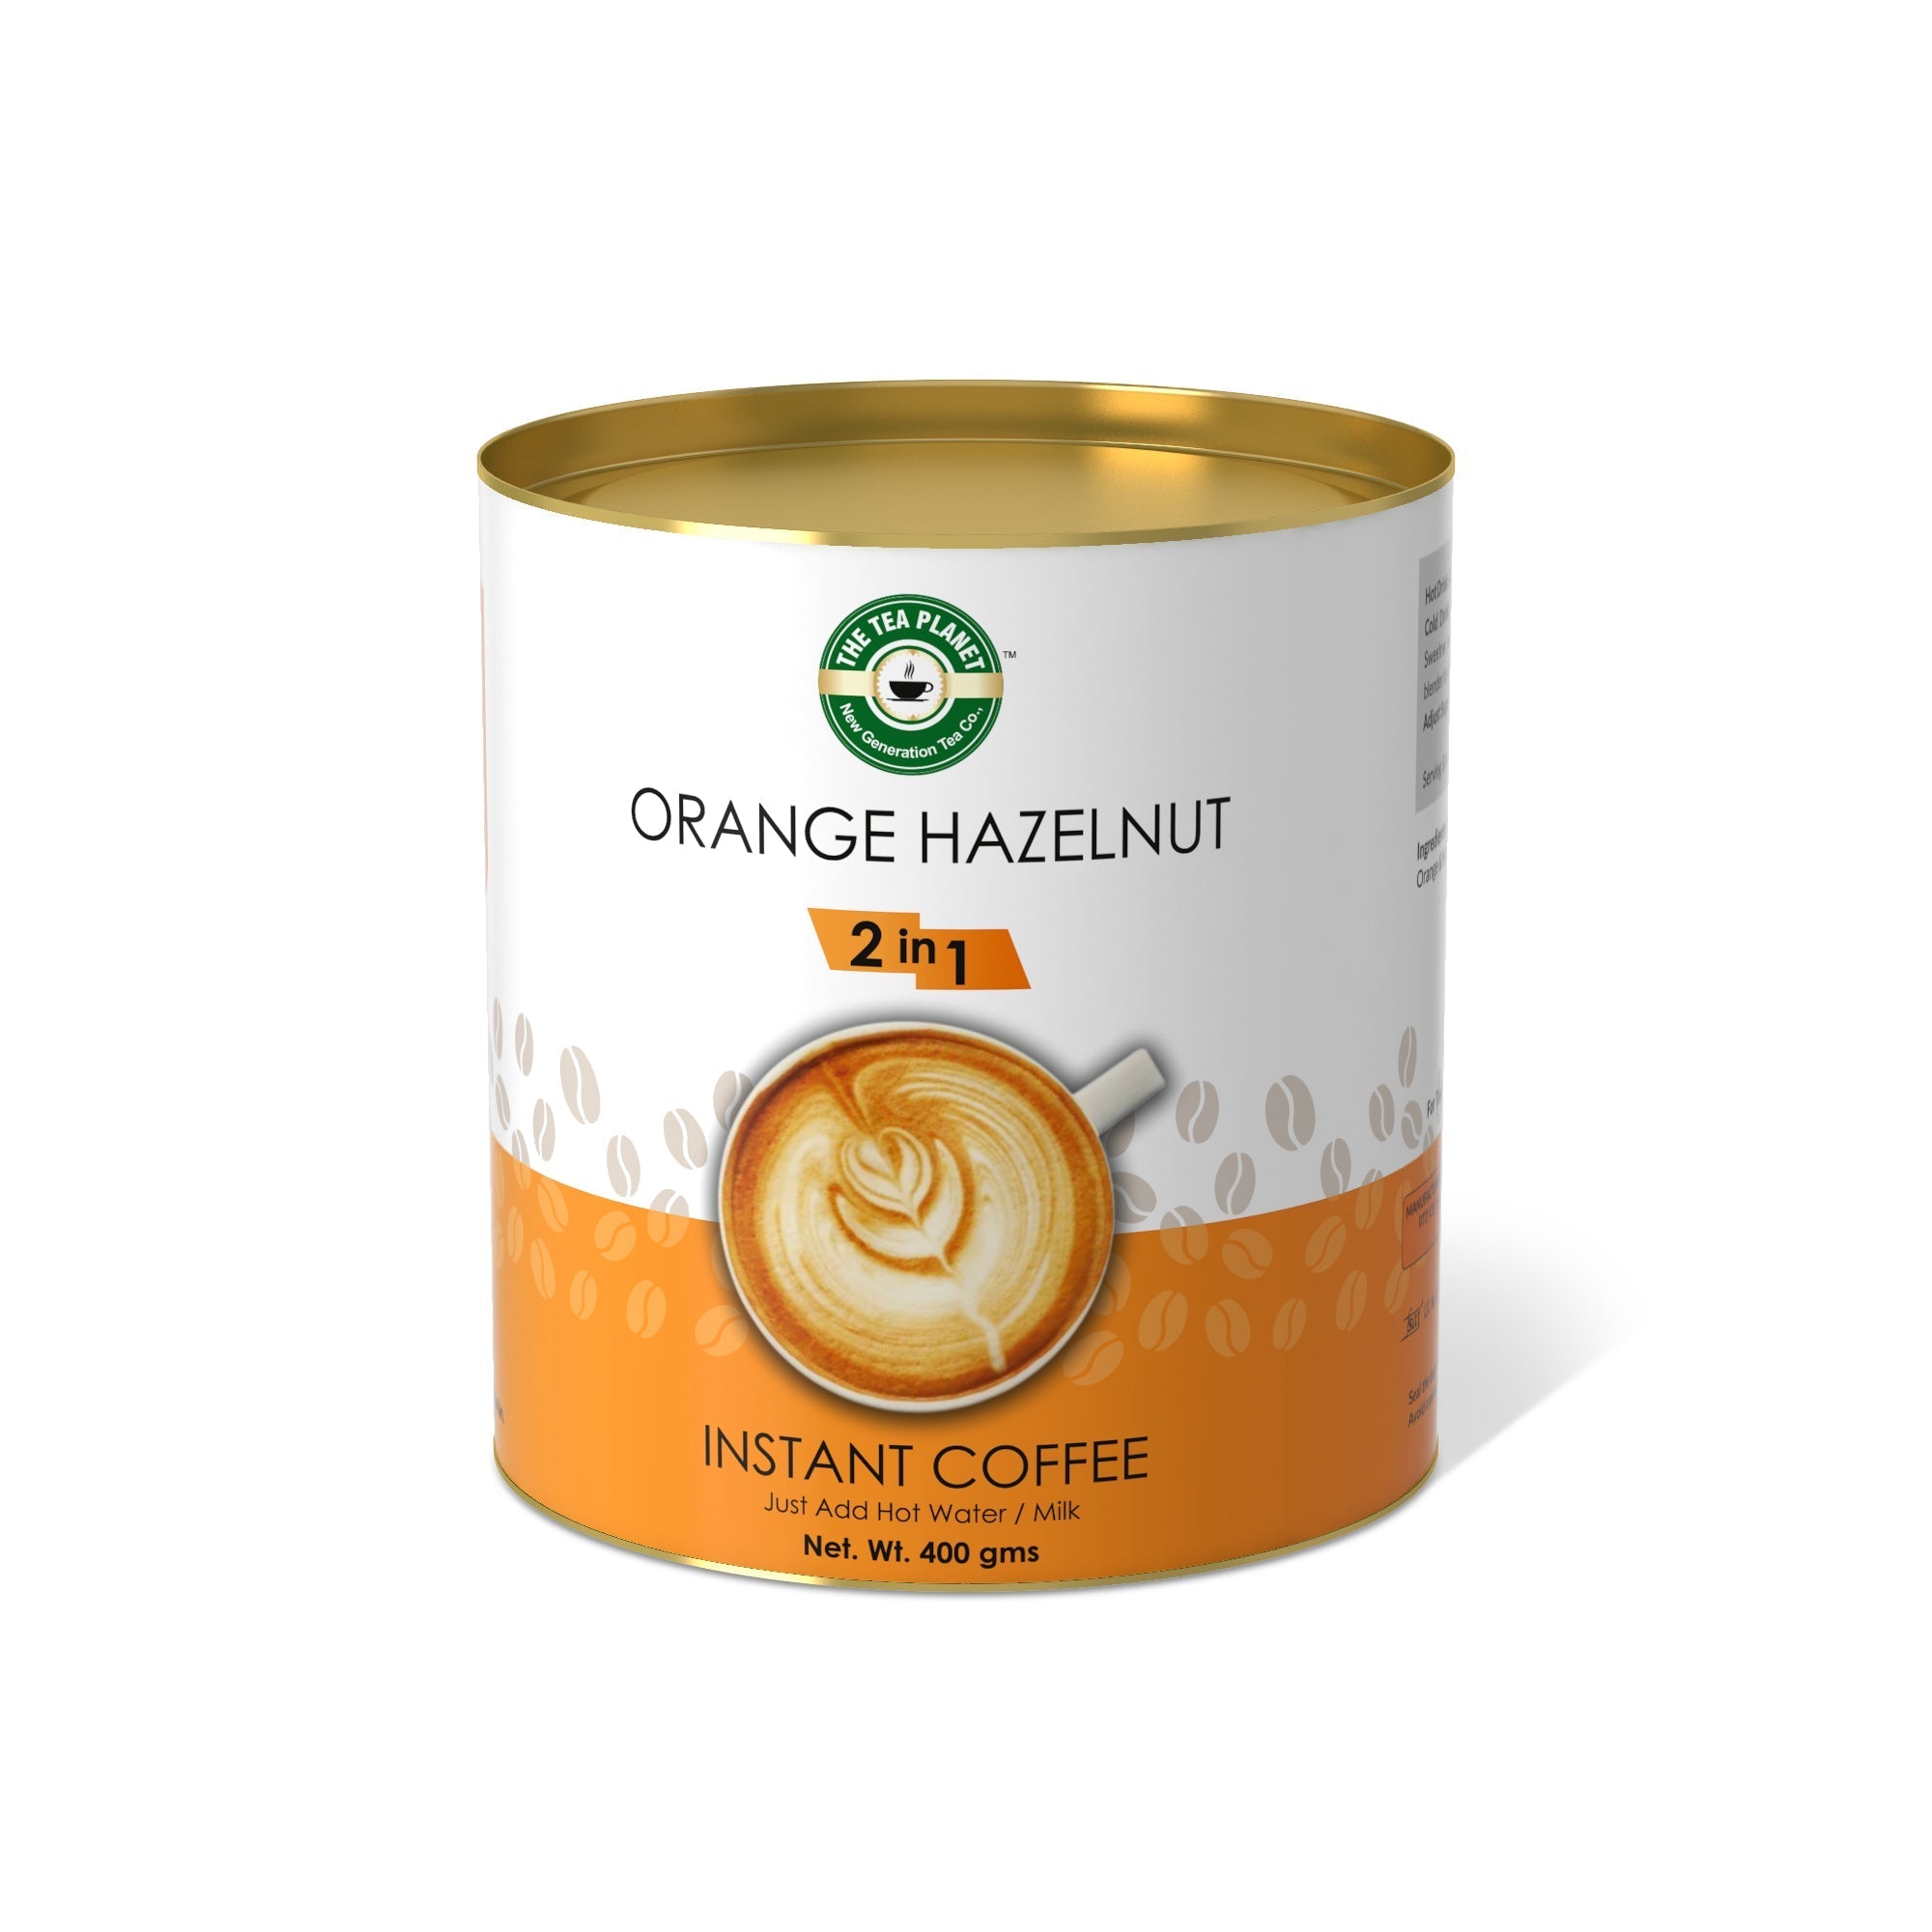 Orange Hazelnut Instant Coffee Premix (2 in 1) - 400 gms